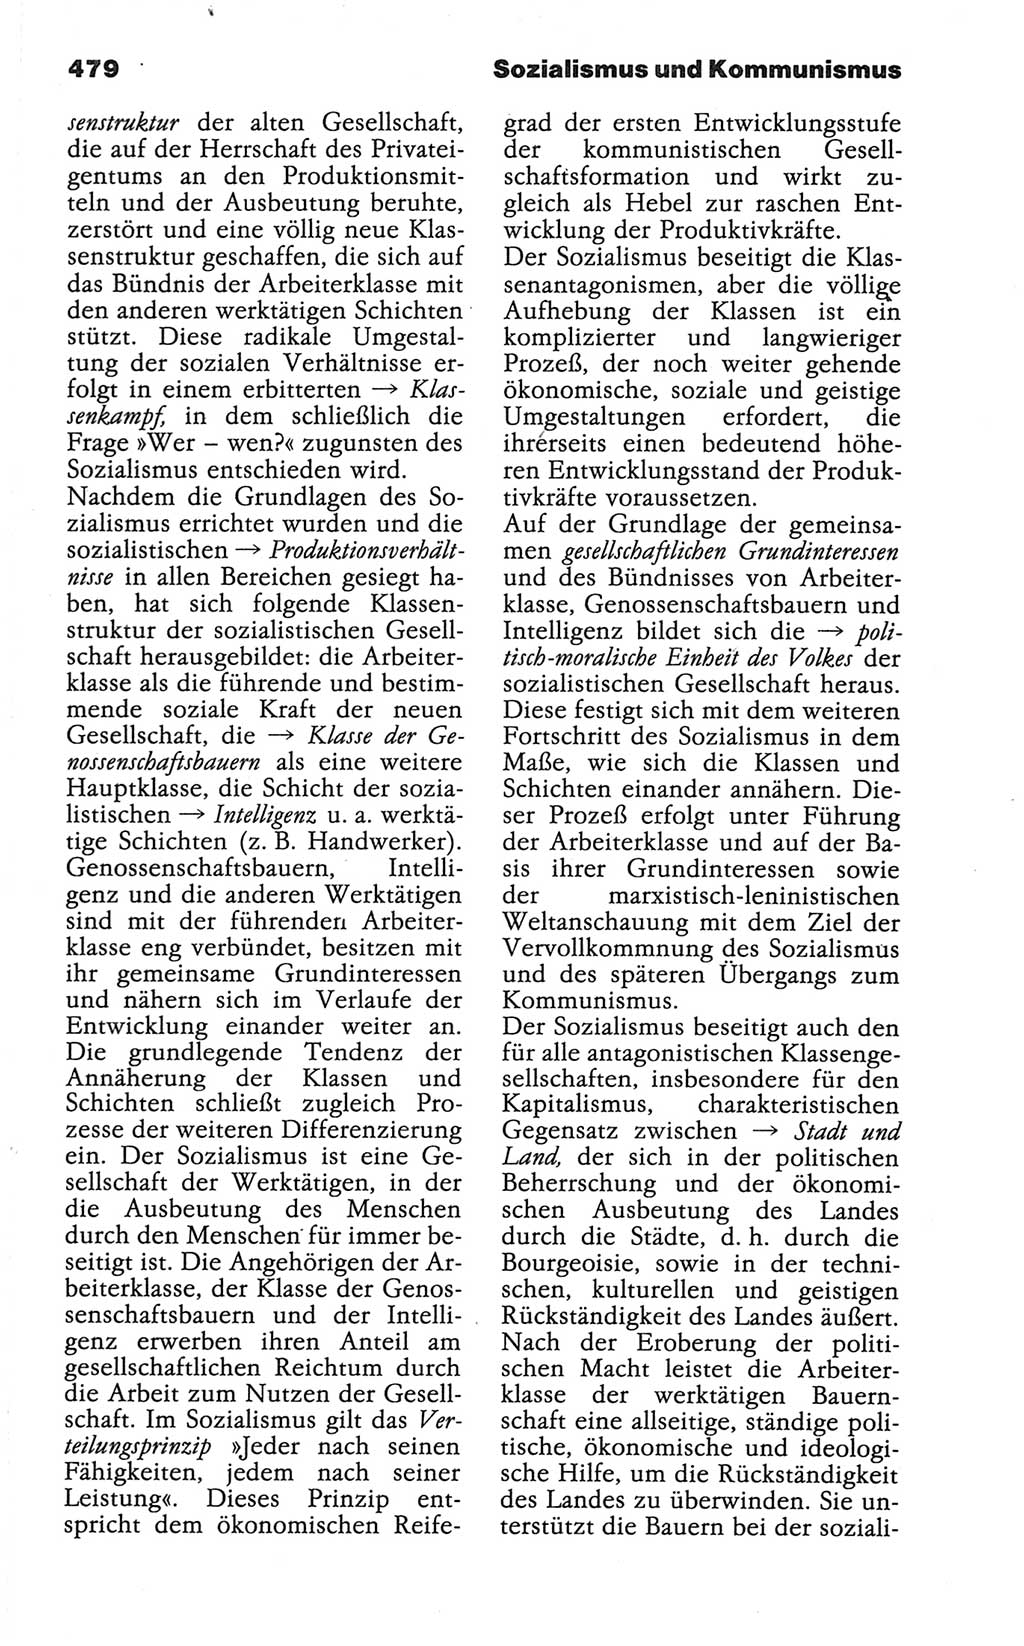 Wörterbuch der marxistisch-leninistischen Philosophie [Deutsche Demokratische Republik (DDR)] 1986, Seite 479 (Wb. ML Phil. DDR 1986, S. 479)